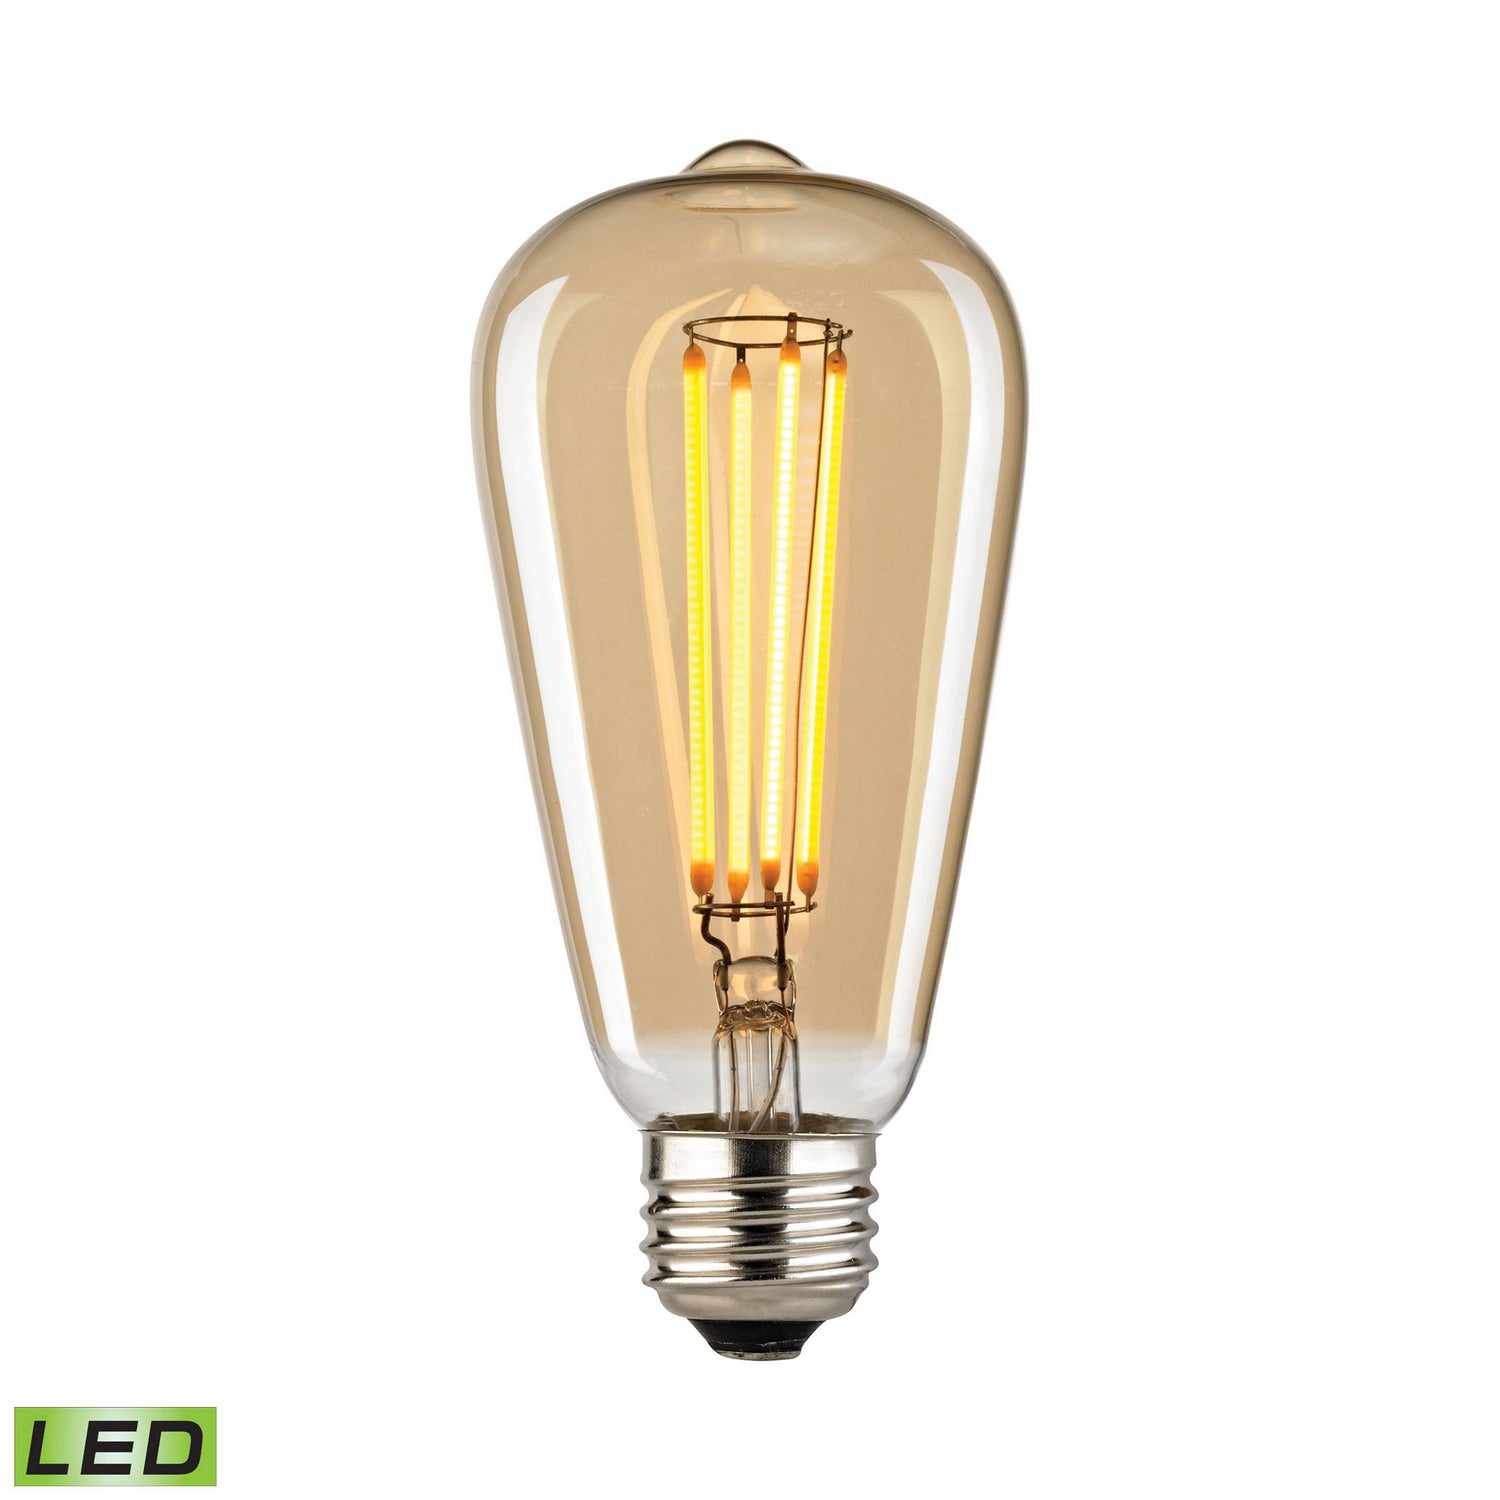 ELK Home - 1110 - Light Bulb - LED Bulbs - Light Gold Tint